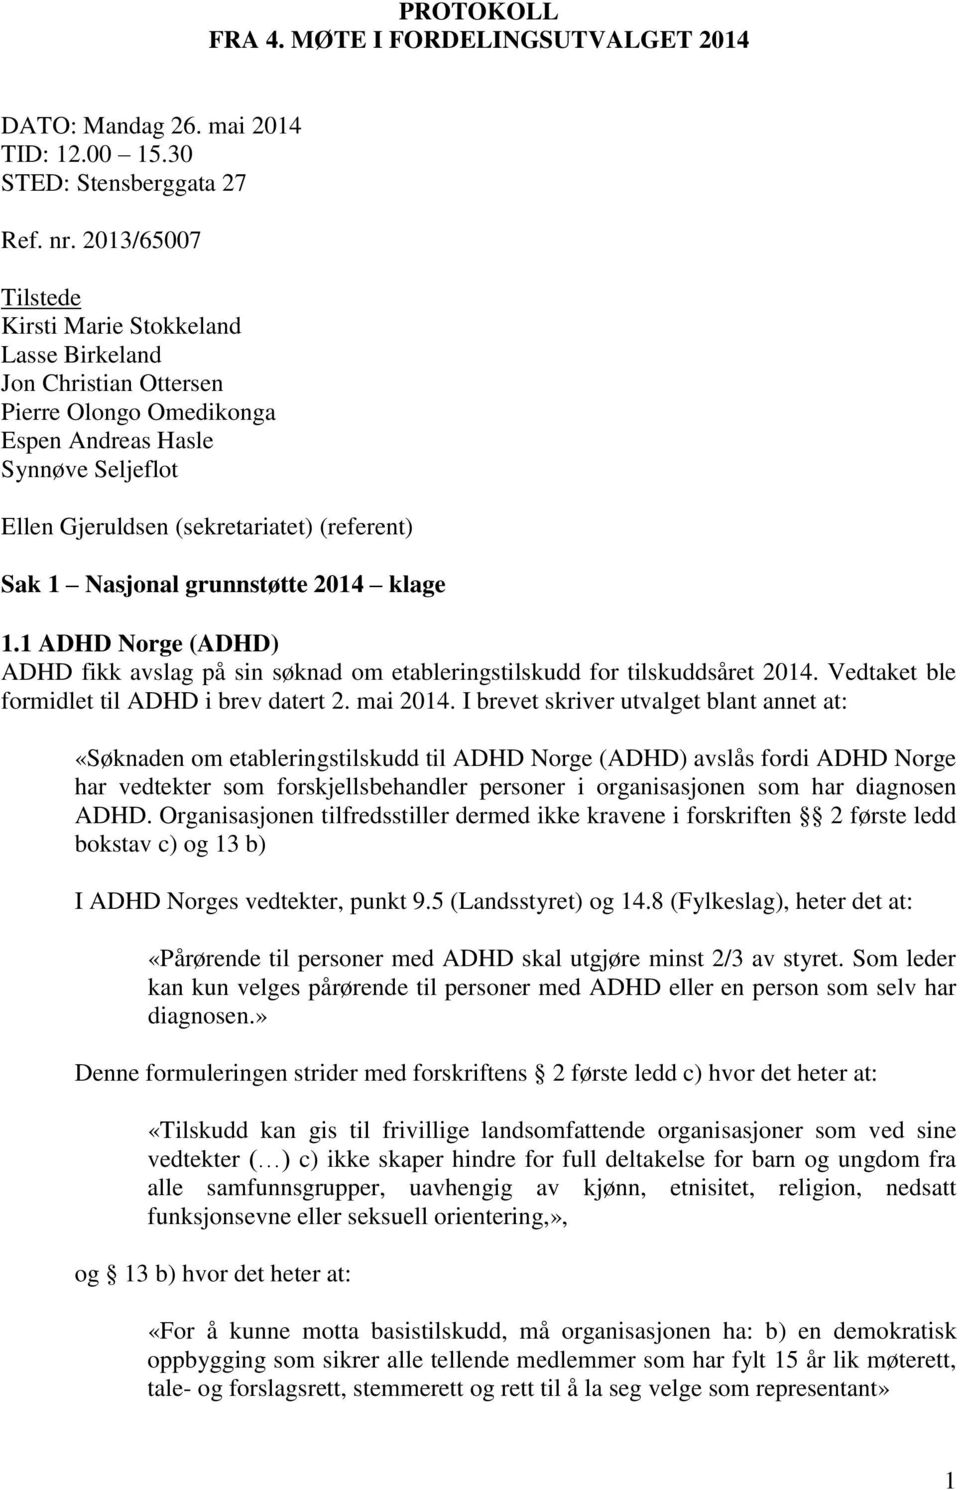 Nasjonal grunnstøtte 2014 klage 1.1 ADHD Norge (ADHD) ADHD fikk avslag på sin søknad om etableringstilskudd for tilskuddsåret 2014. Vedtaket ble formidlet til ADHD i brev datert 2. mai 2014.